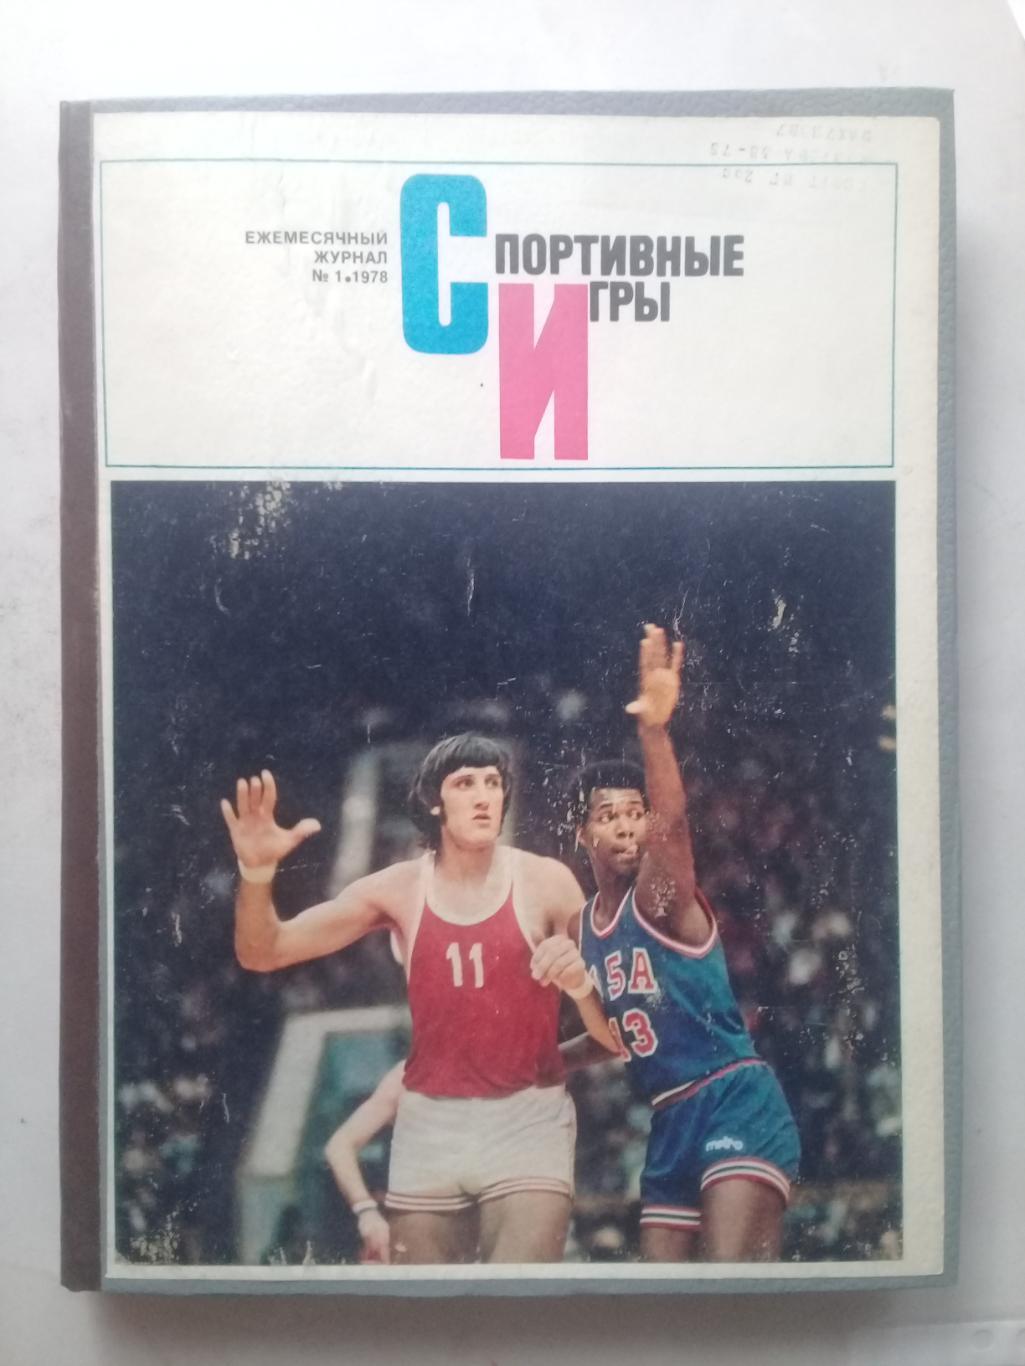 (Только для dk7586) Журнал Спортивные игры 1978 год. Годовой комплект.